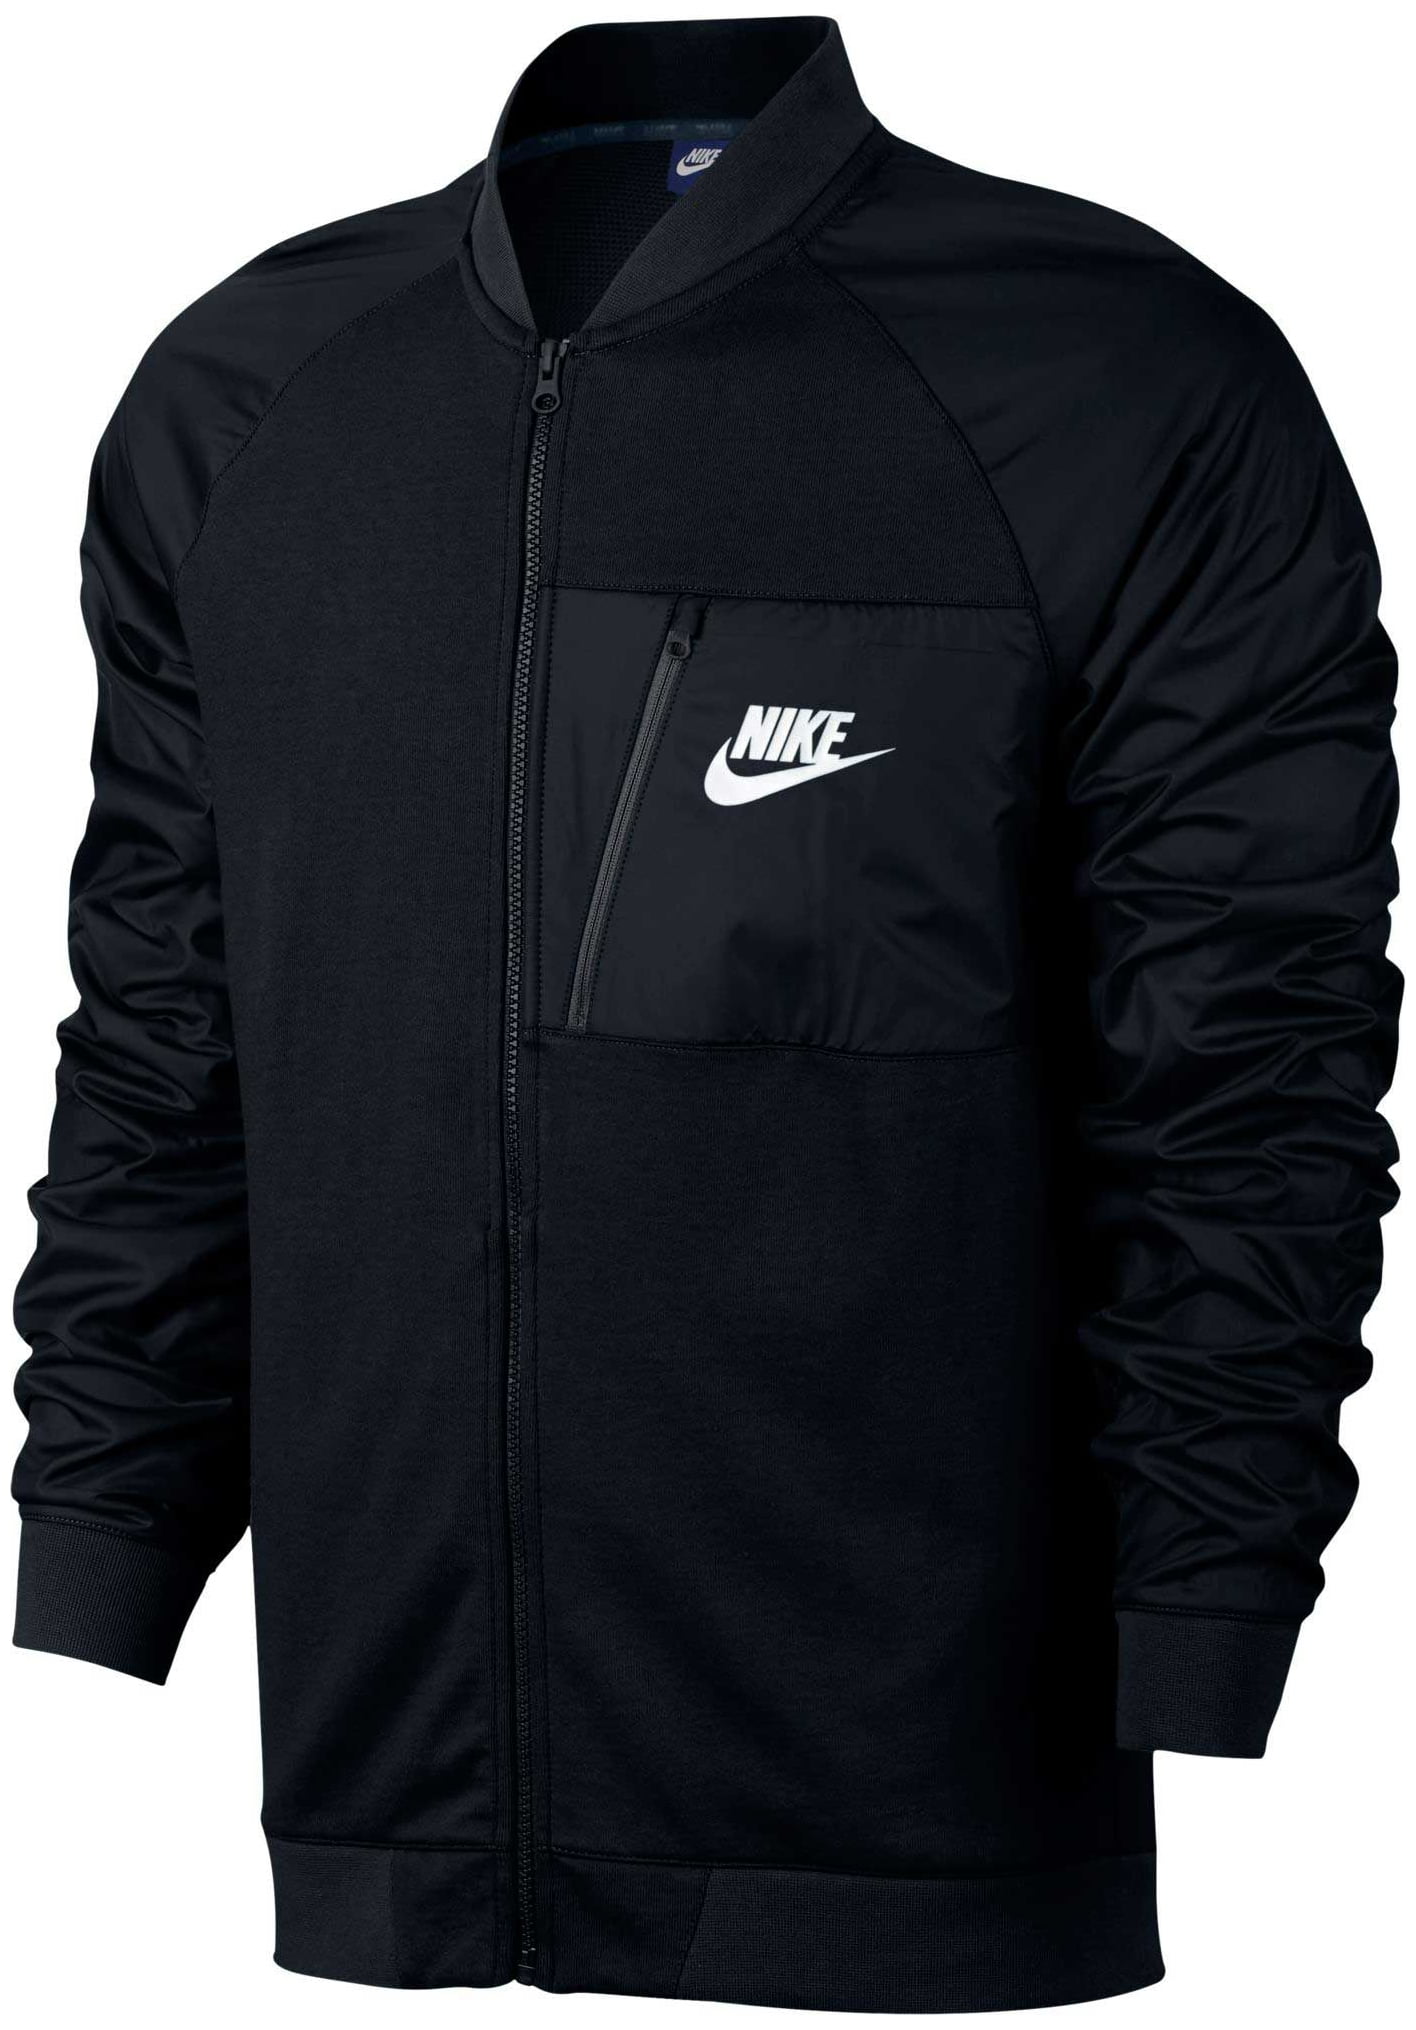 Nike Men's Sportswear Advance 15 Fleece Full Zip Jacket - Black ...